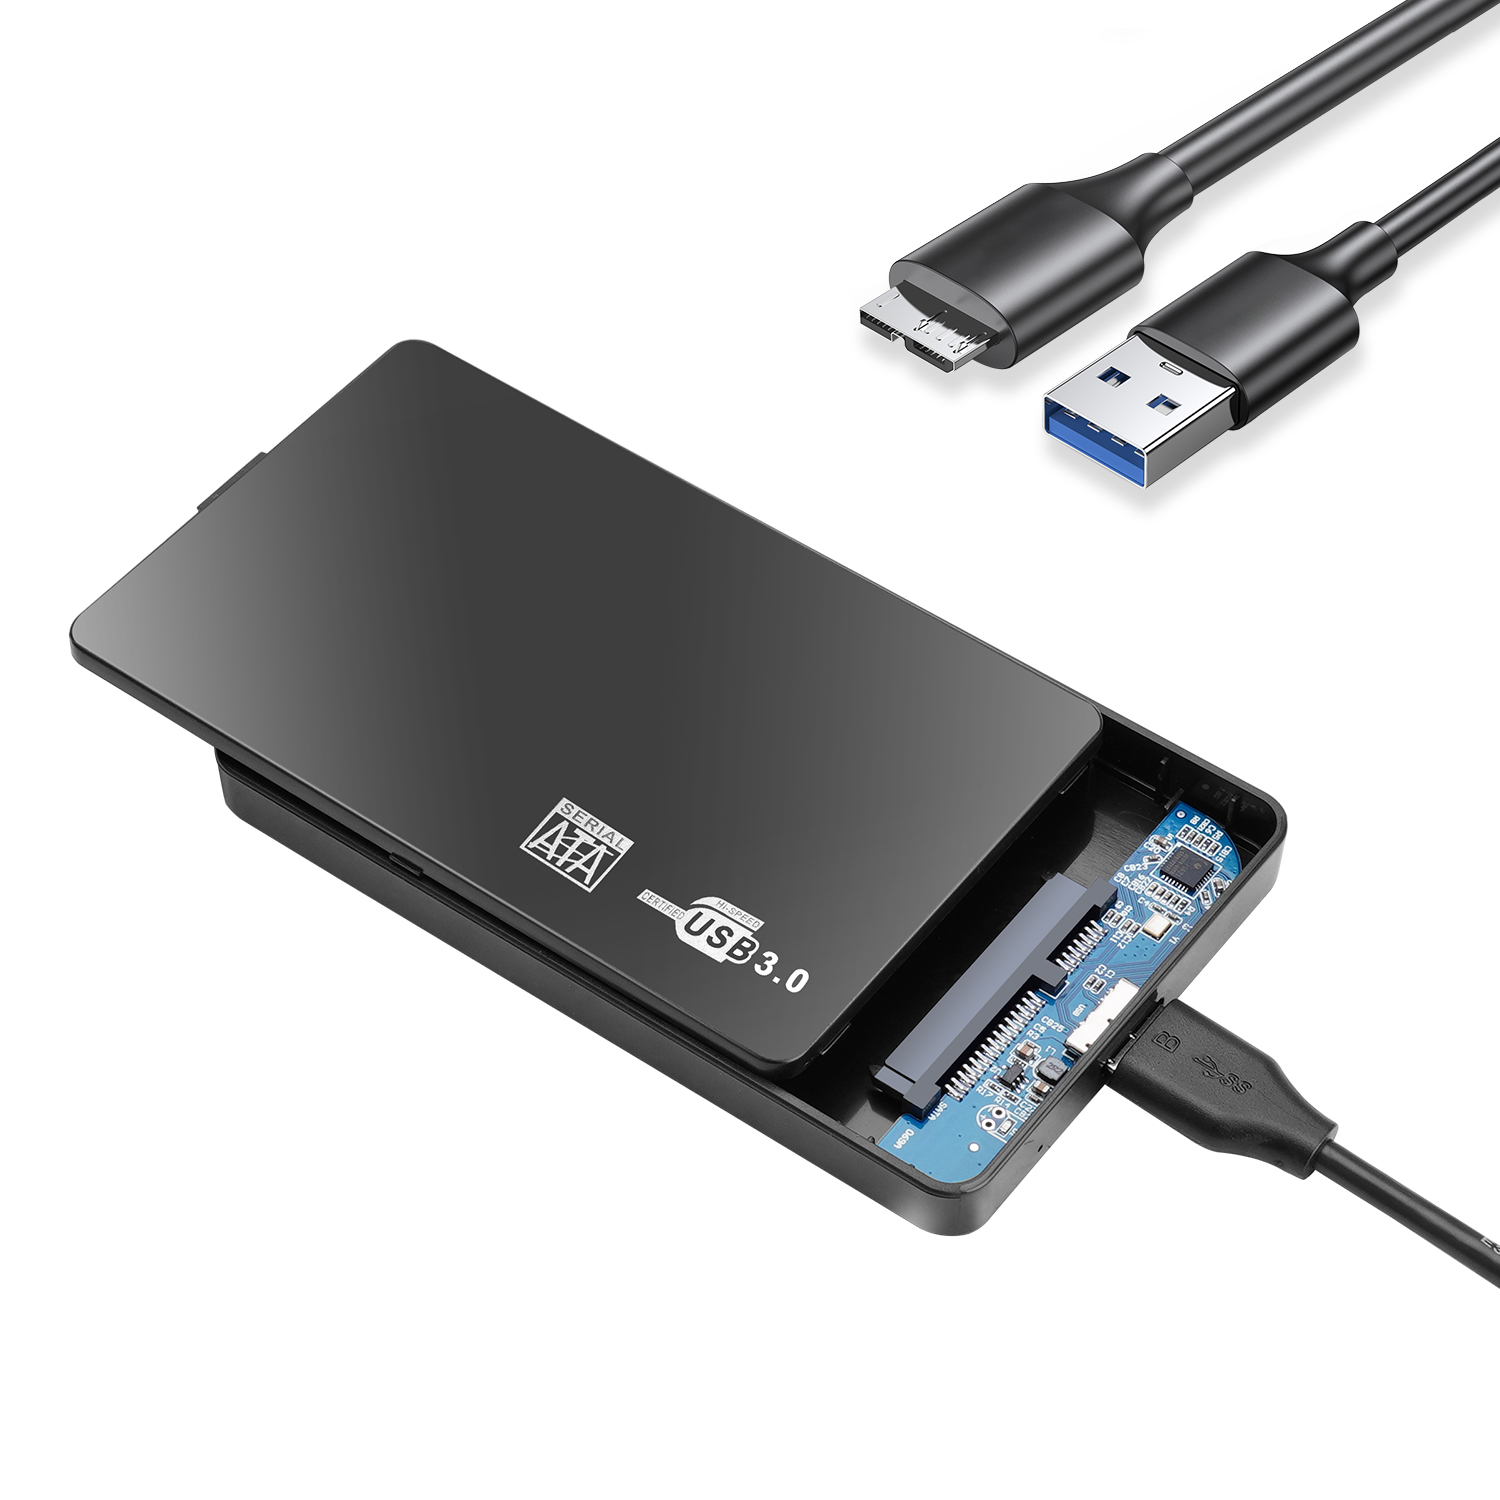 送料無料 外付けハードディスク ポータブル 320GB 2.5インチ テレビ録画保存 電源不要 HDD USB3.0接続 SATA 3.0 写真 動画 USBケーブル附属